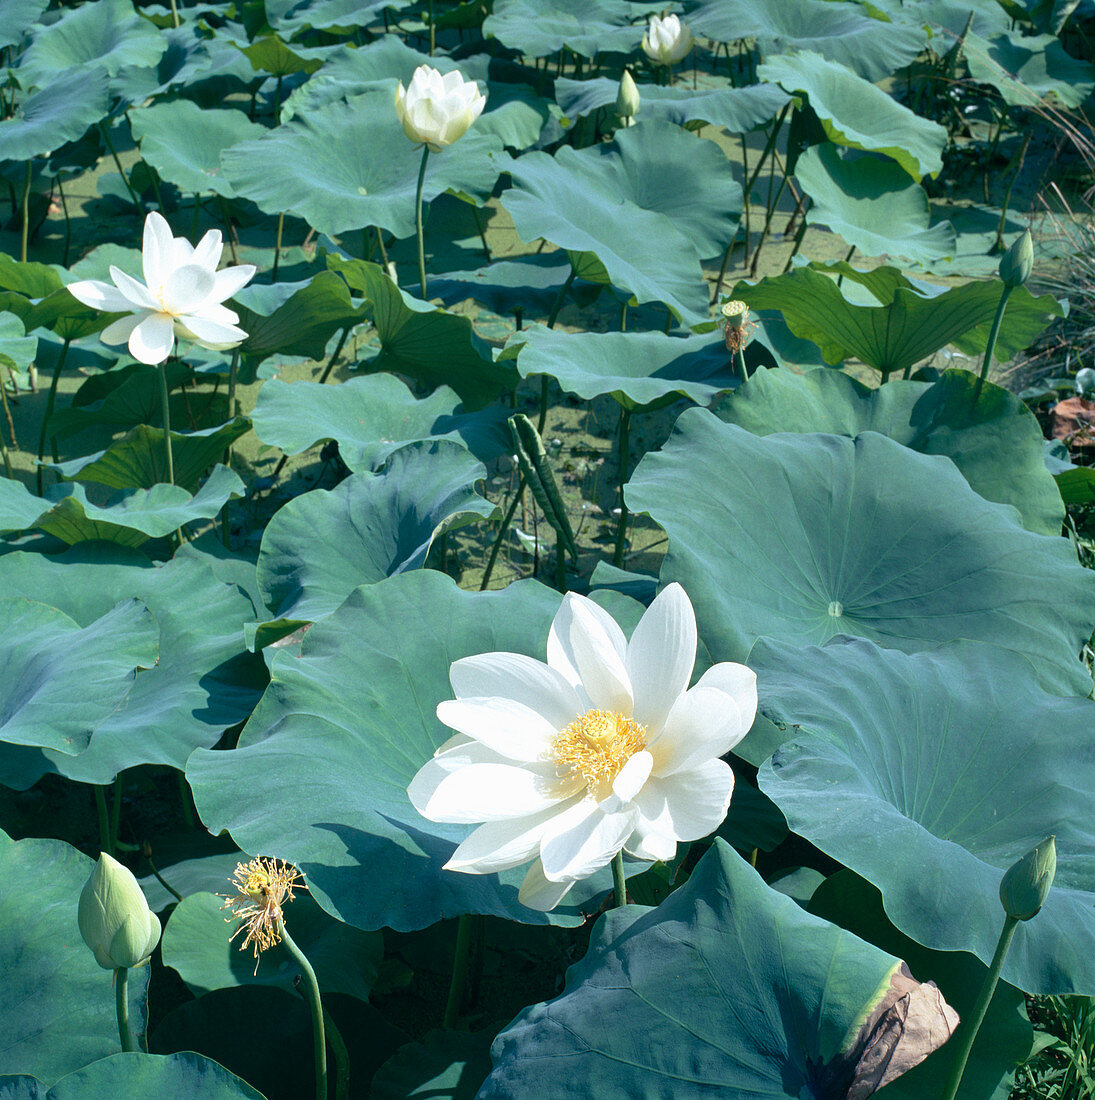 Sacred lotus flowers